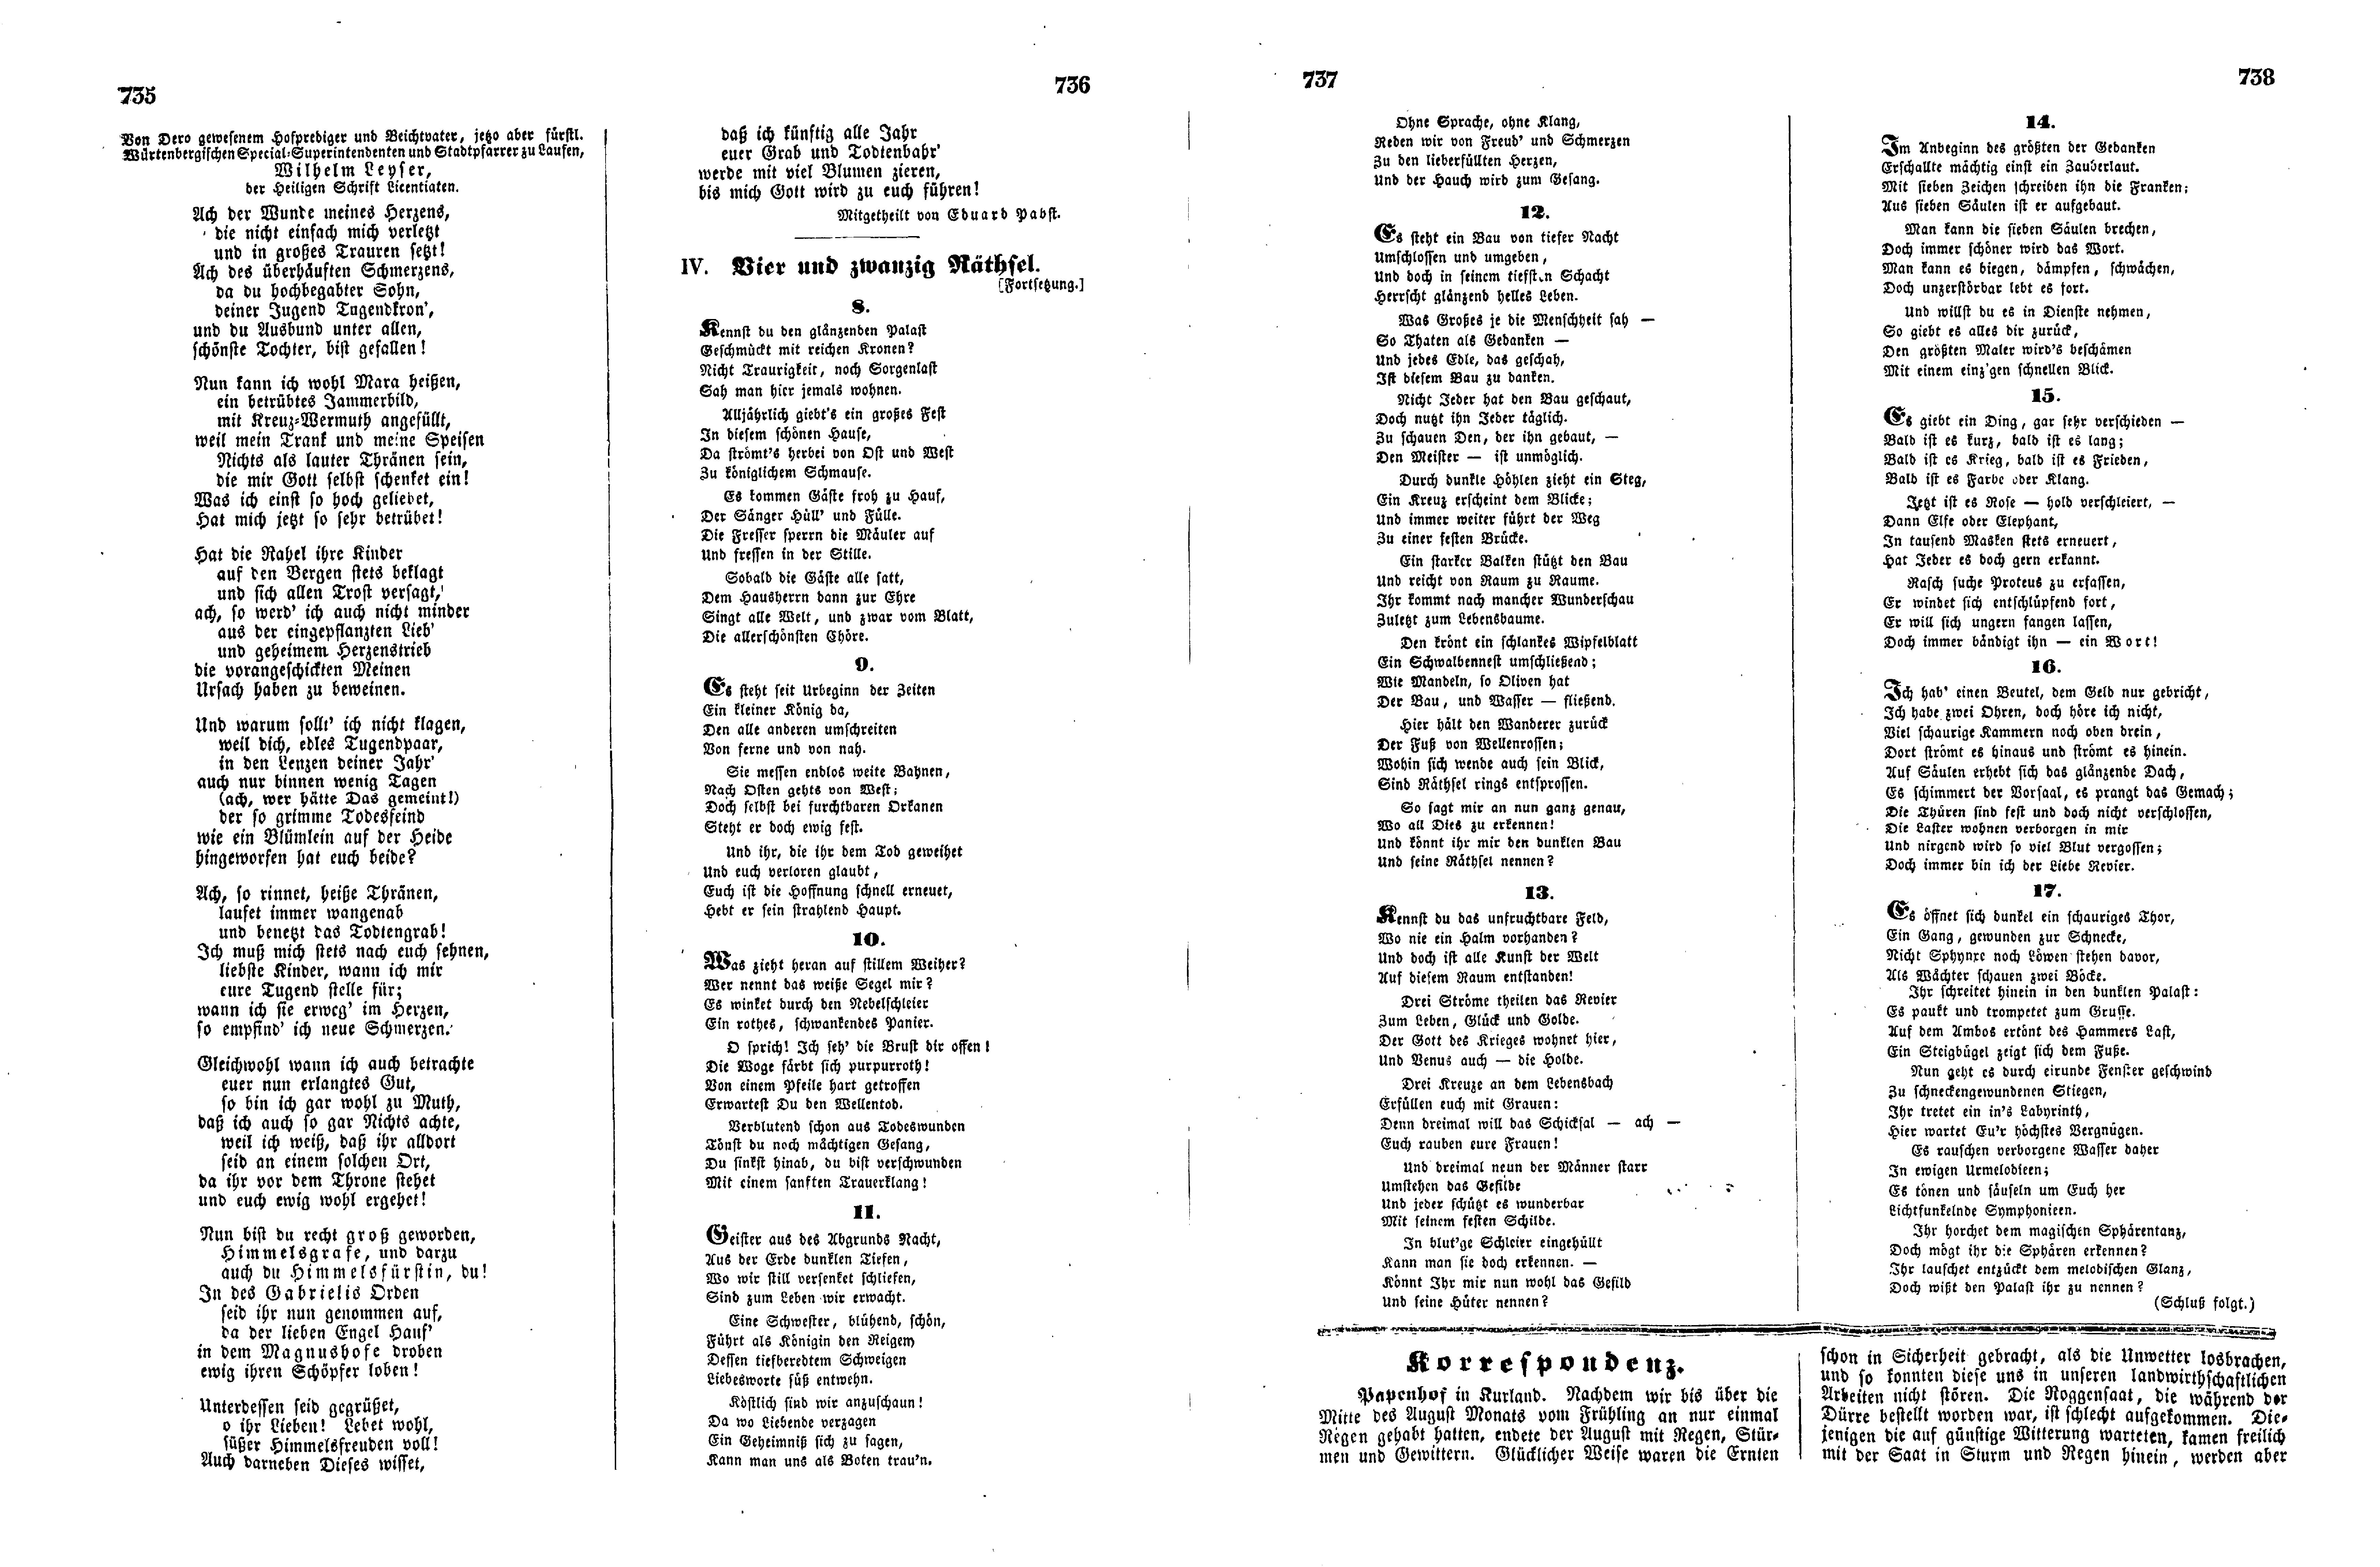 Das Inland [17] (1852) | 189. (735-738) Haupttext